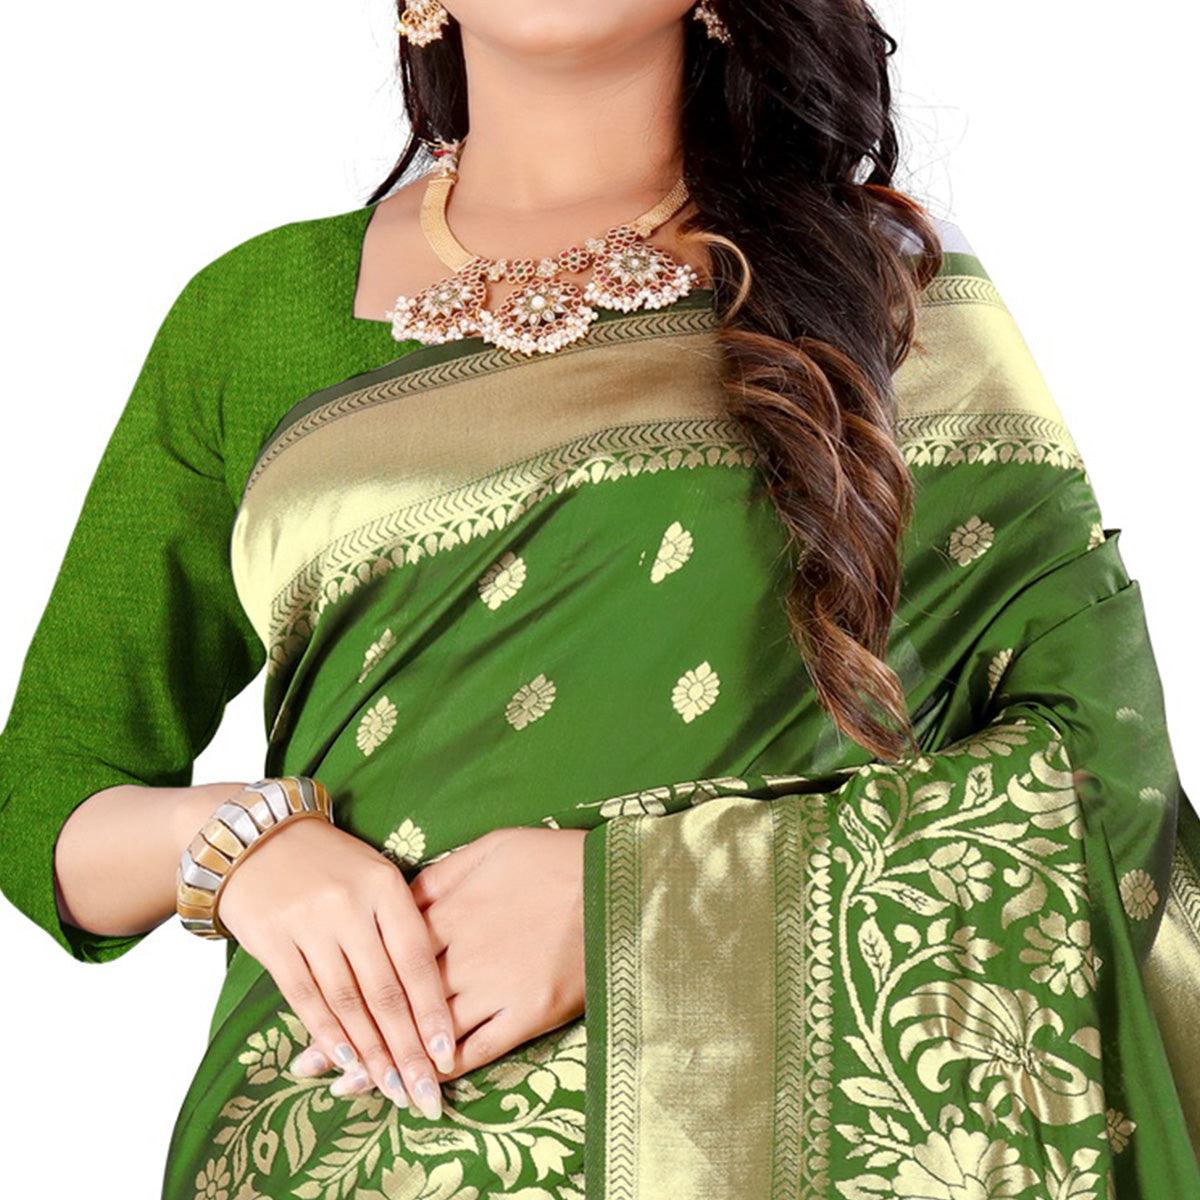 Green Festive Wear Floral Woven Banarasi Silk Saree - Peachmode